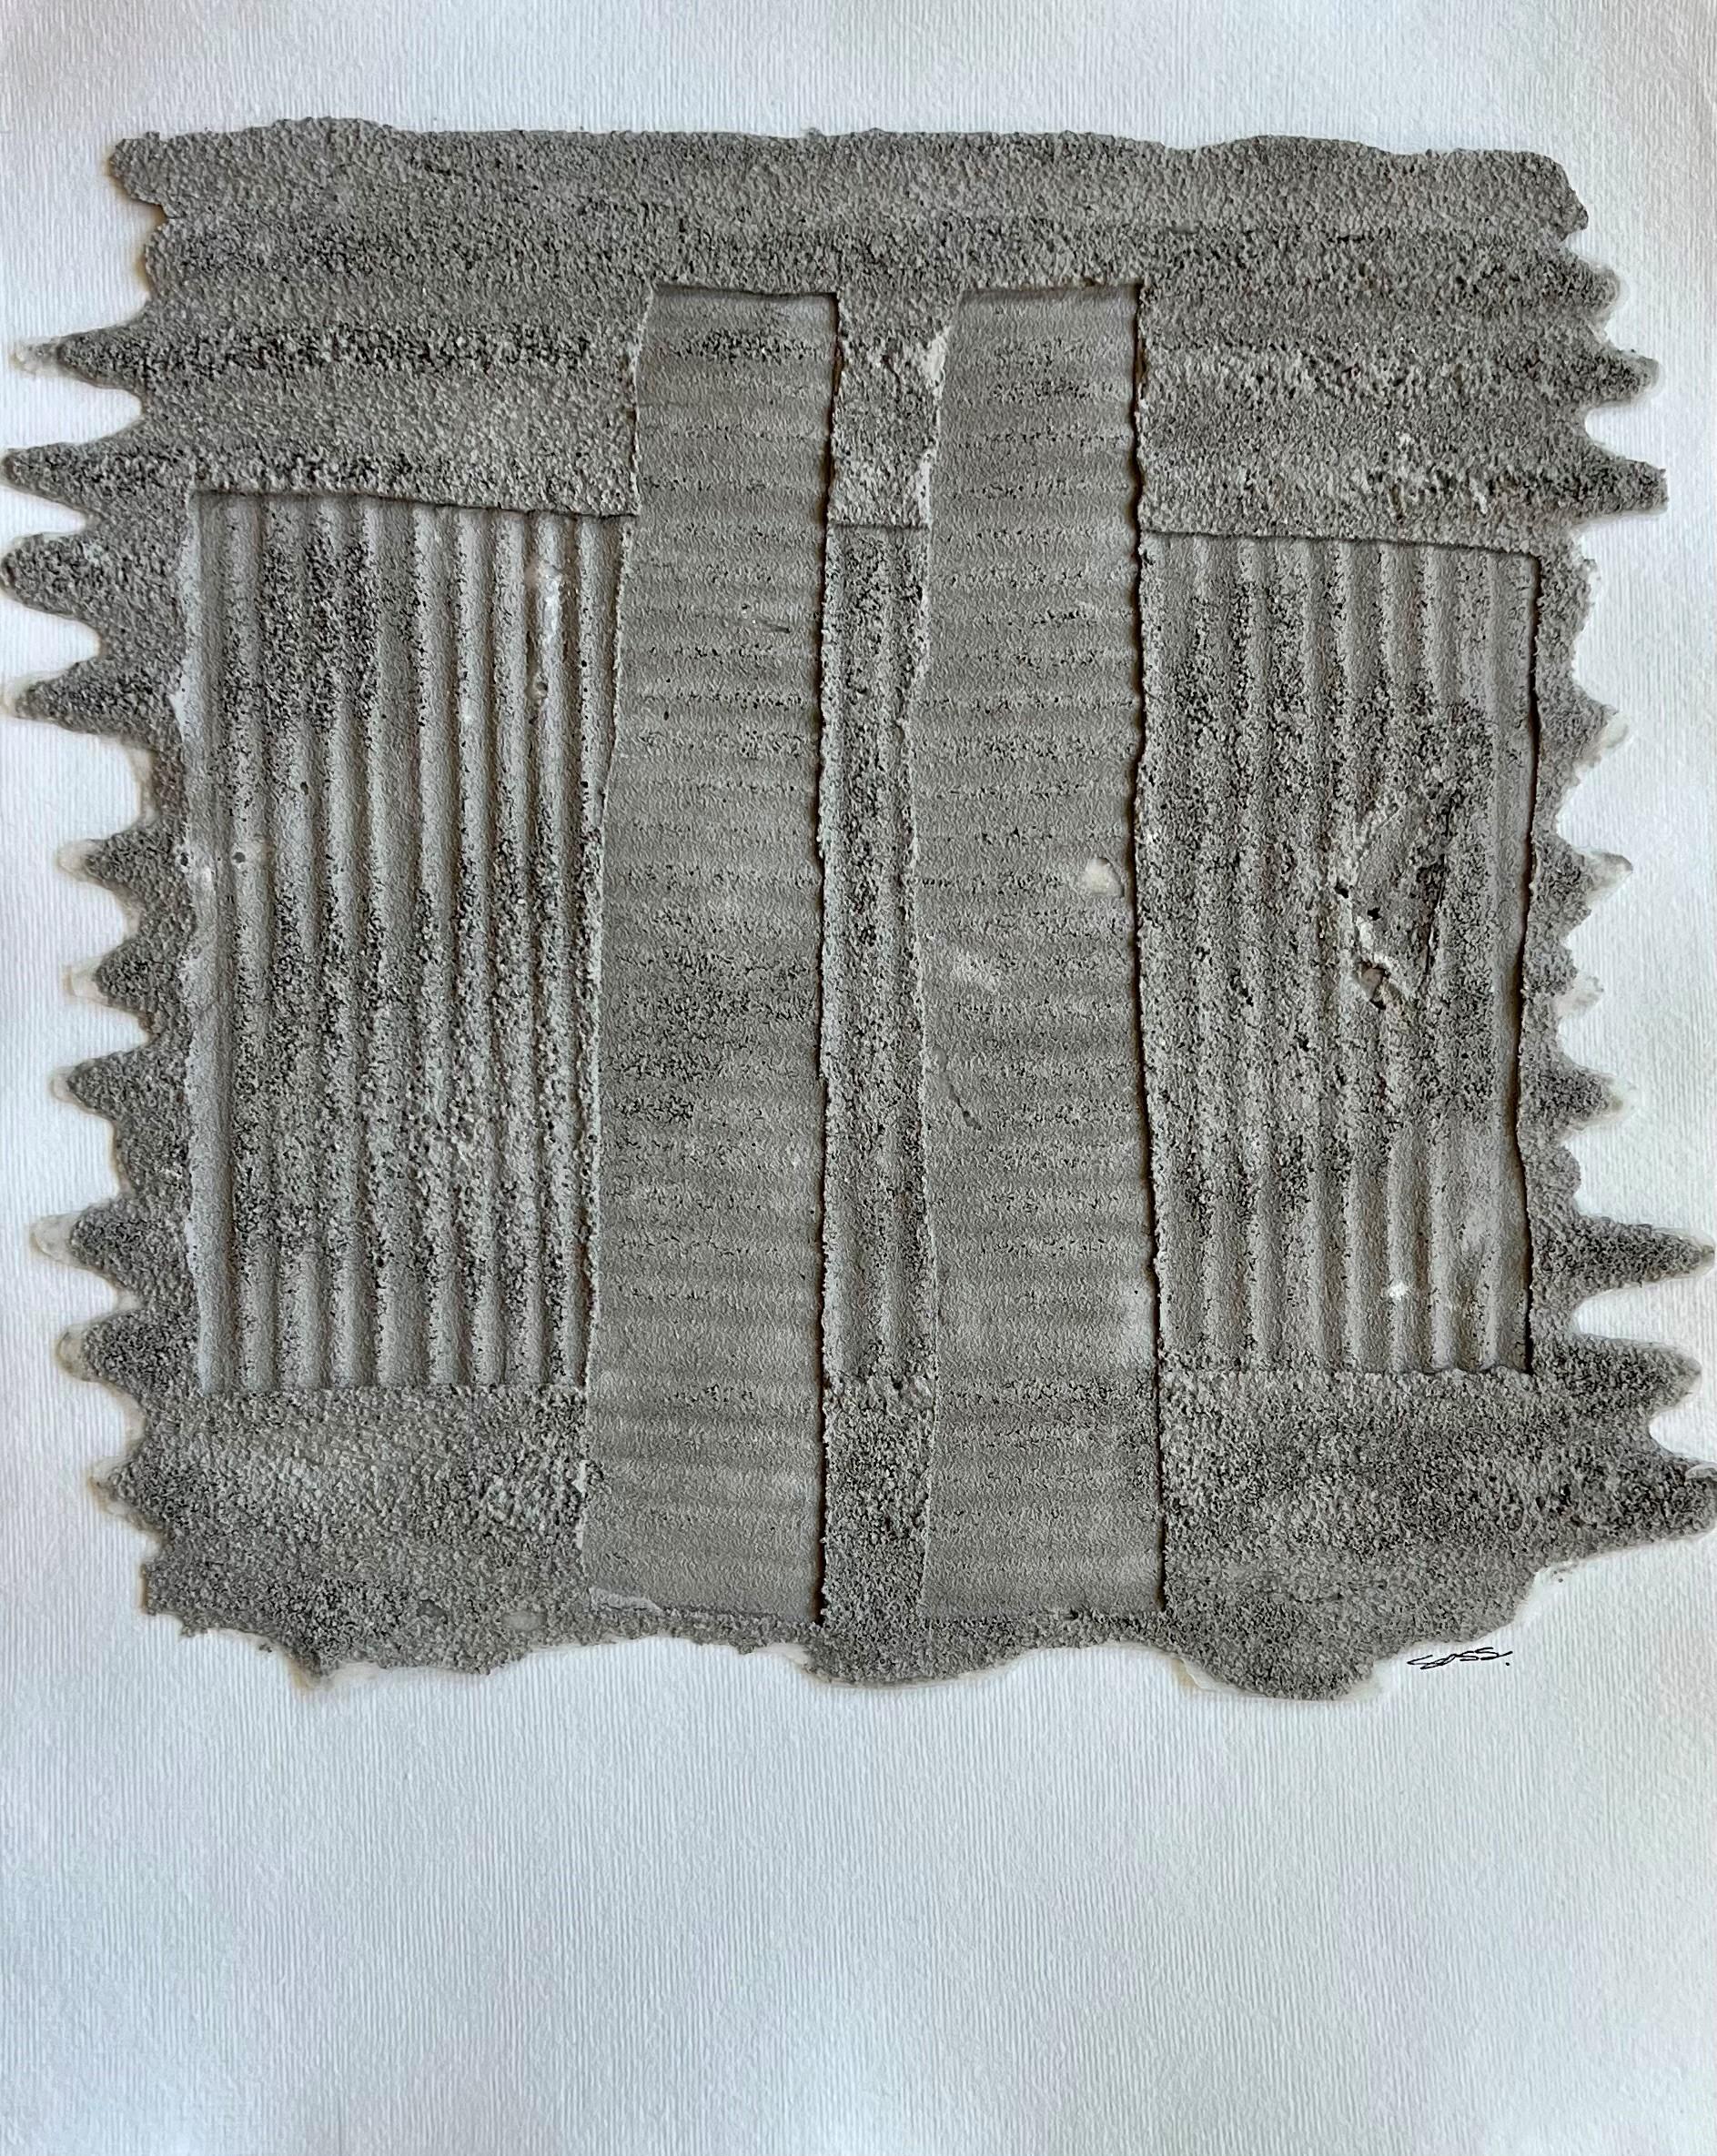 Dirty Benny 2 de Brook Sosss, abstrait vertical taupe sur papier avec grès